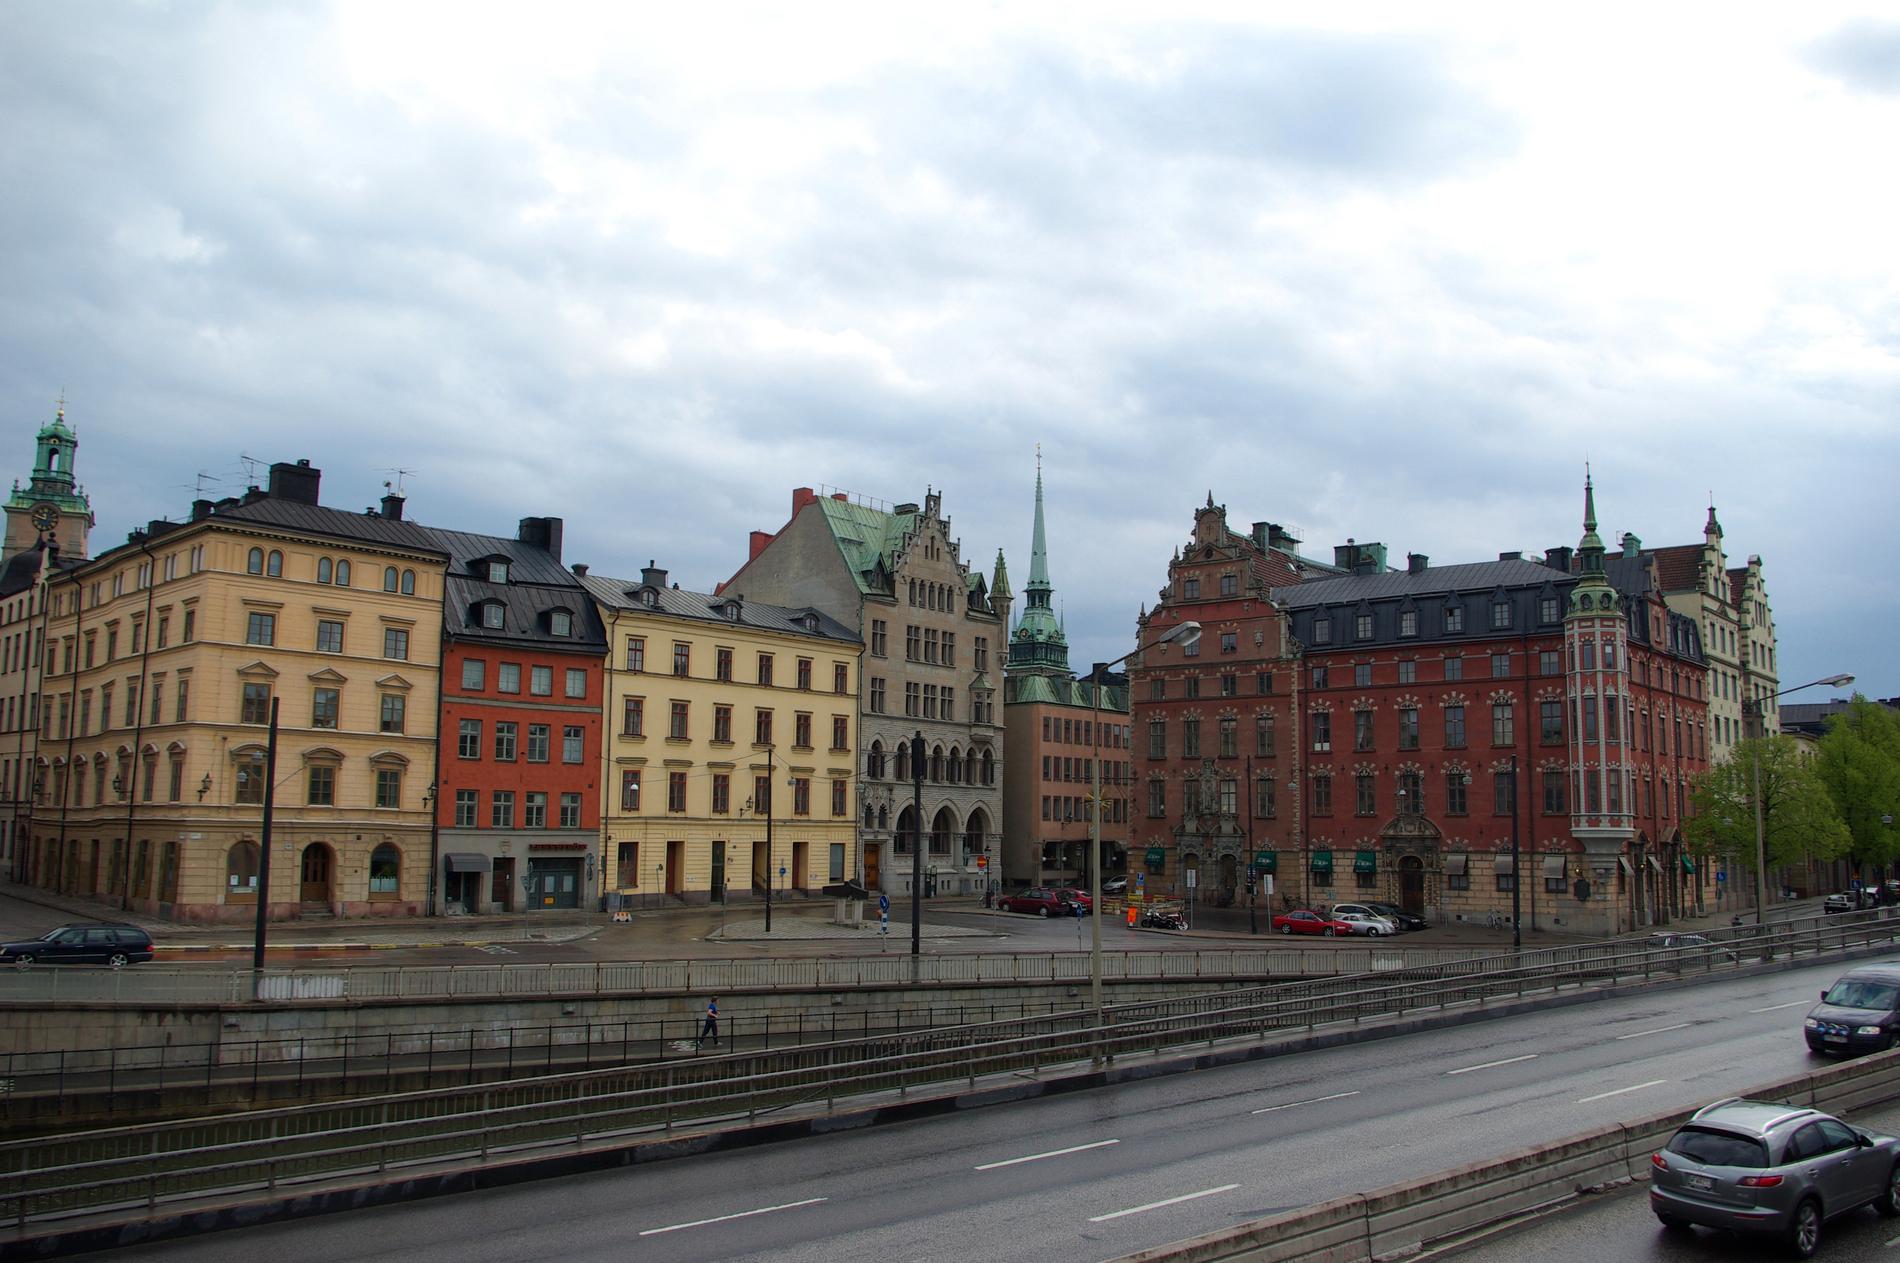 Dokusåpadeltagaren togs av polis utanför Stockholm.